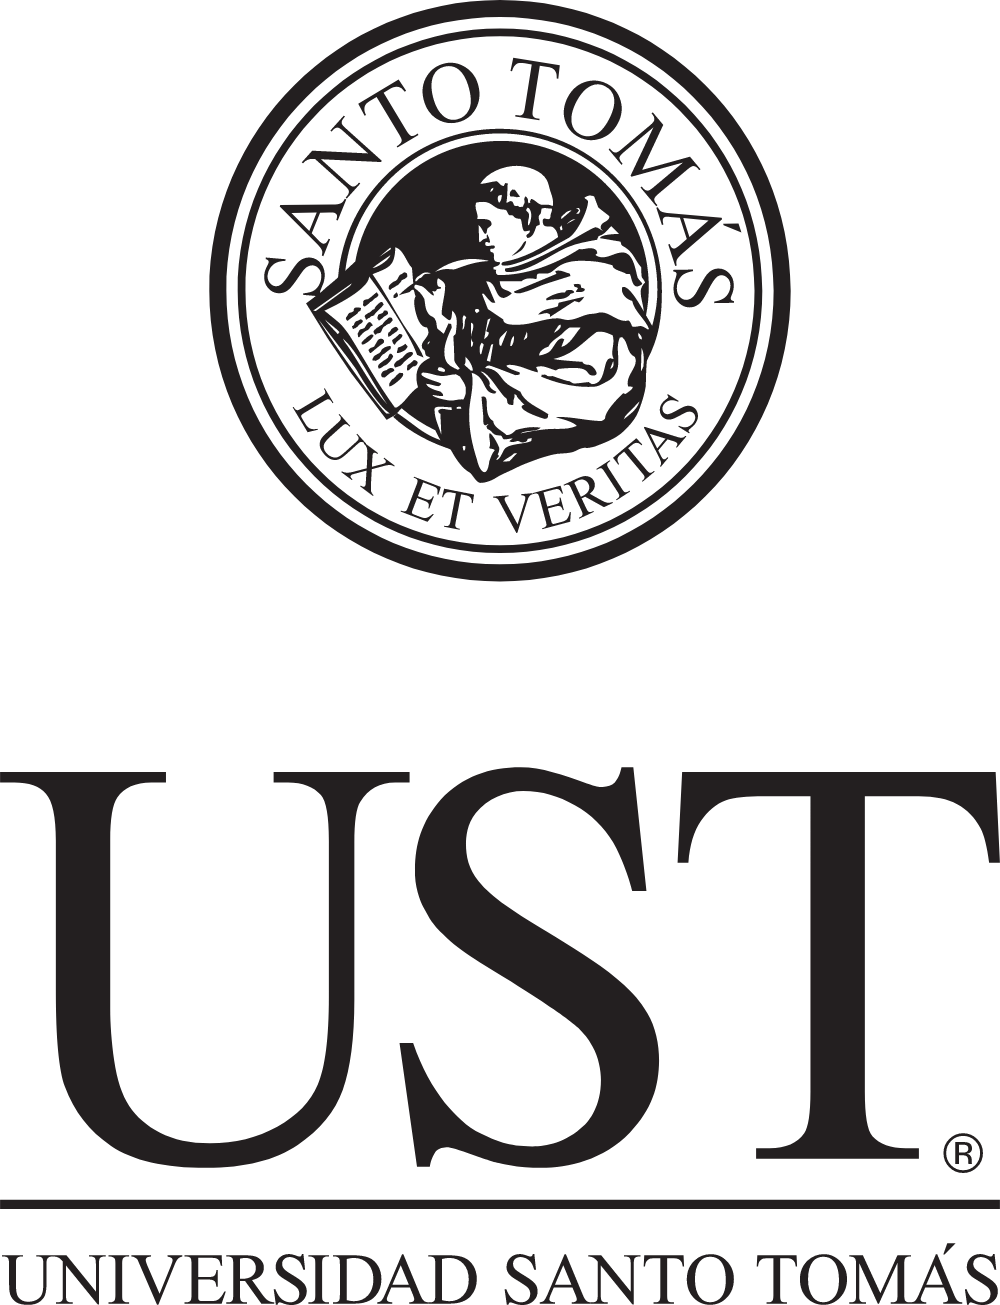 Universidad Santo Tomás Logo Logos